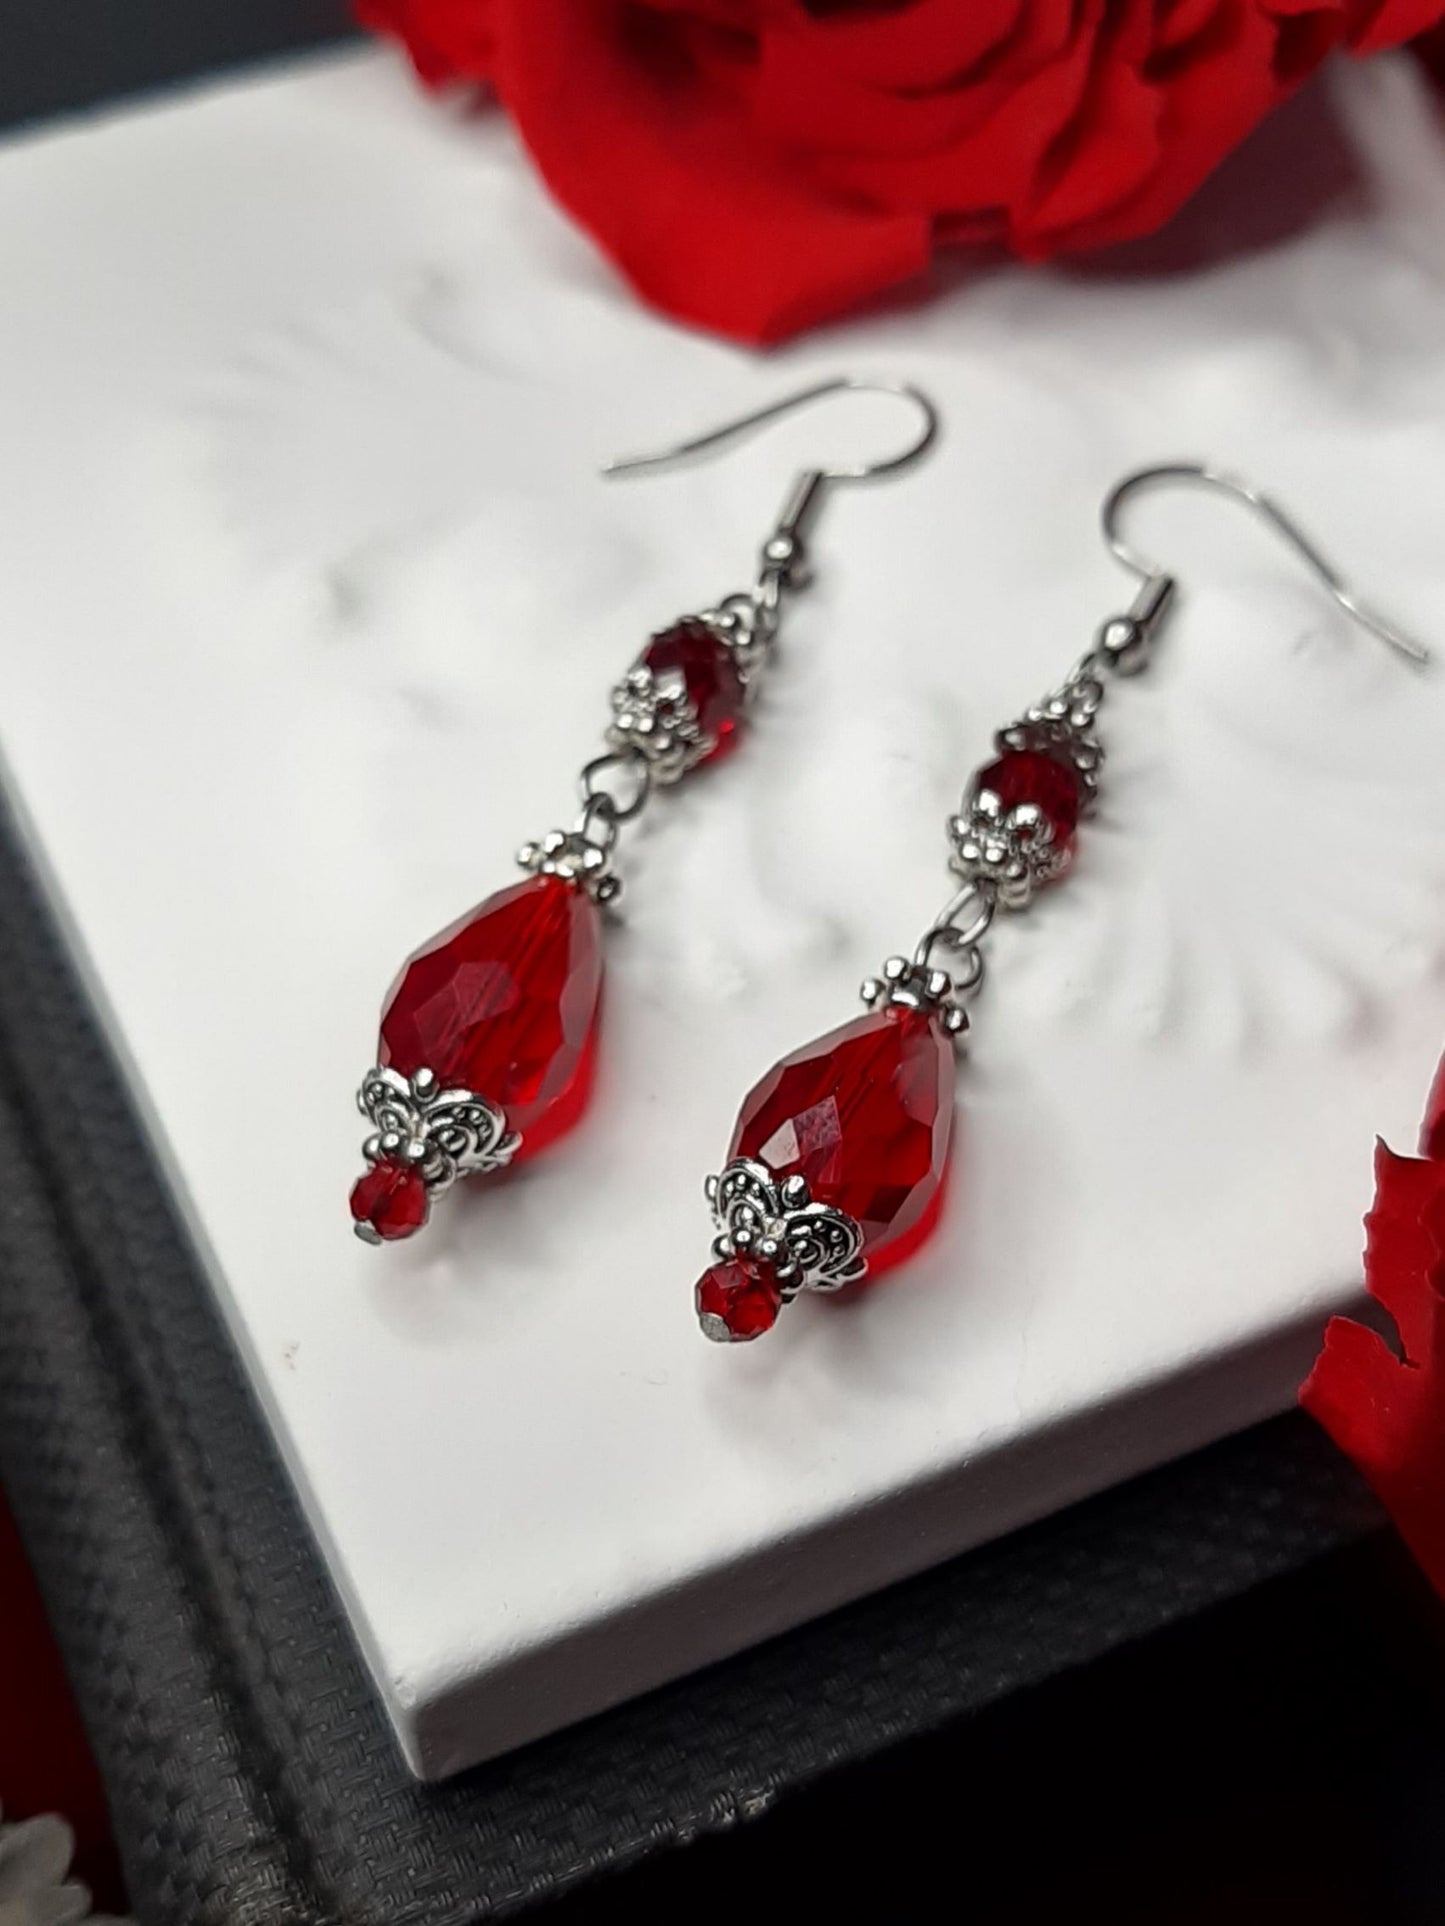 𝕯𝖊𝖘𝖎𝖗𝖊 crystal earrings - Red